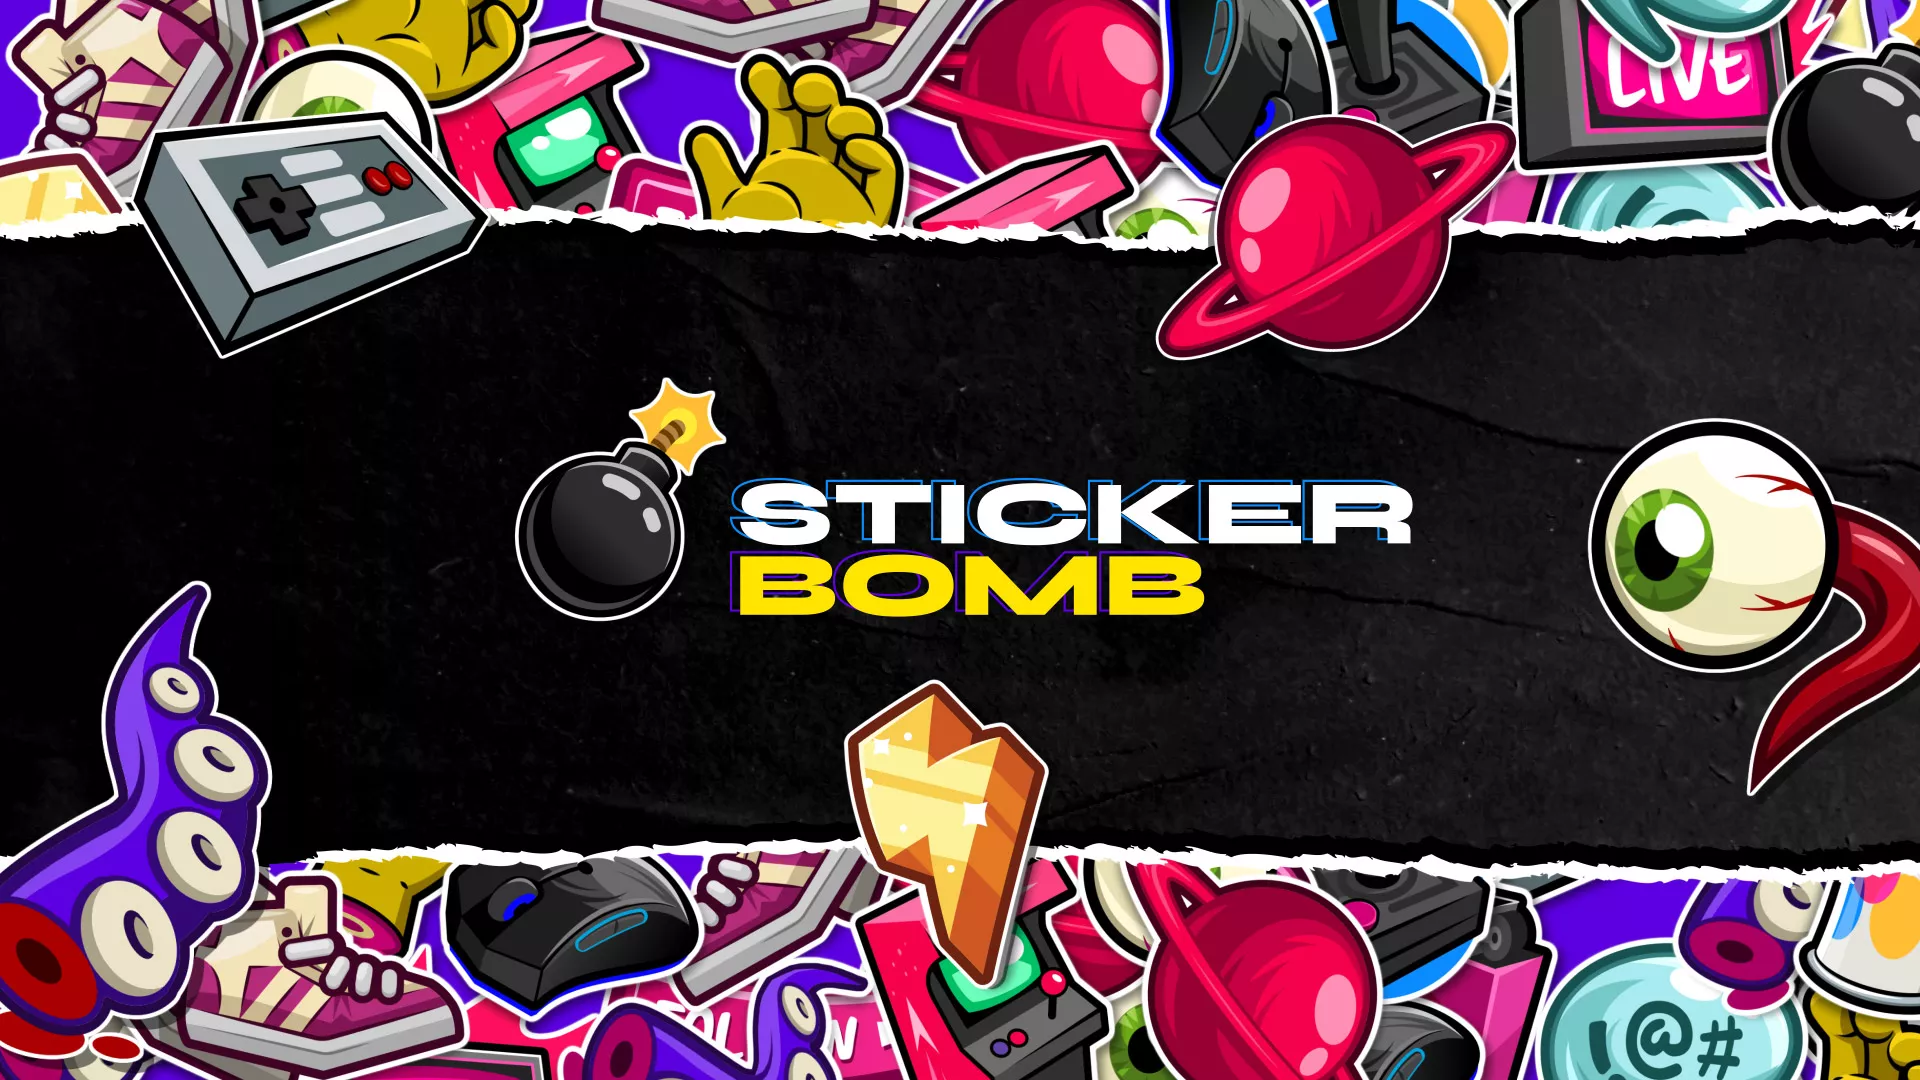 Sticker Bomb - Stream Pack - Main Image